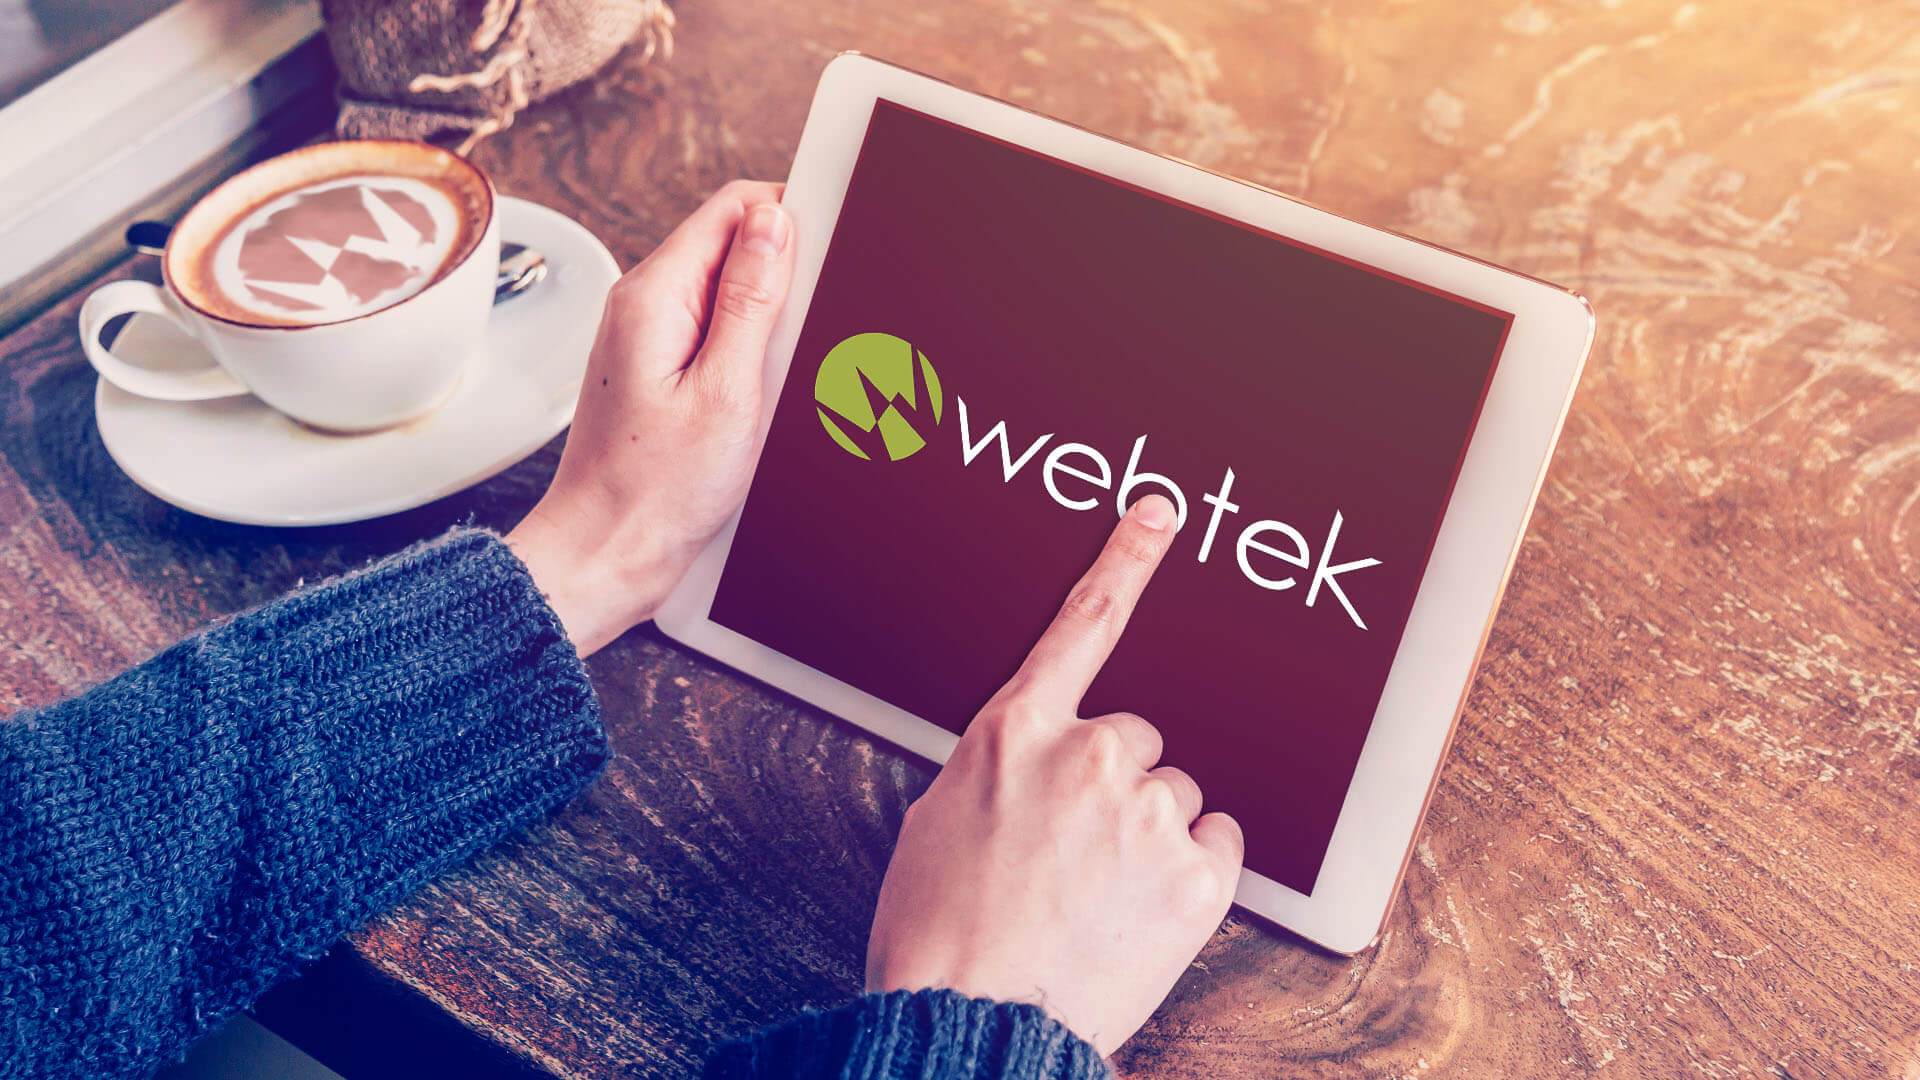 Webtek: web agency in Lombardia